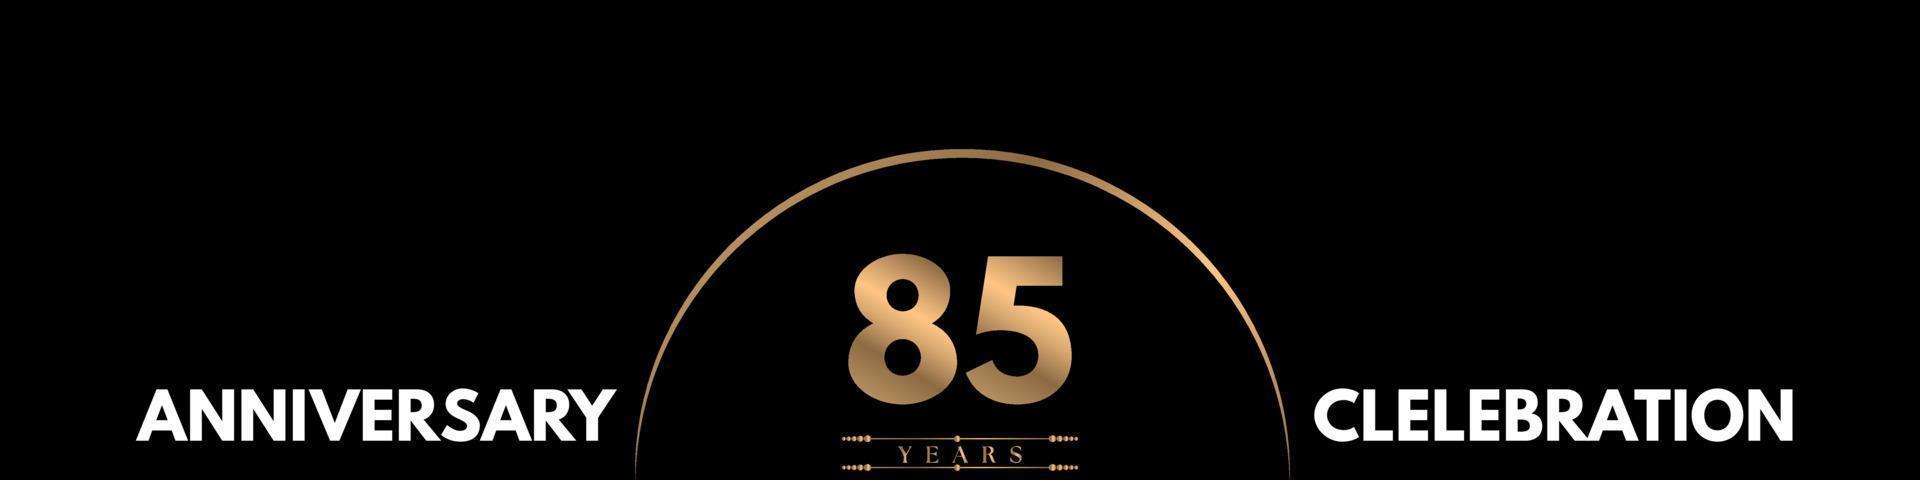 Celebrazione dell'anniversario di 85 anni con numero elegante isolato su sfondo nero. disegno vettoriale per biglietto di auguri, festa di compleanno, matrimonio, festa evento, cerimonia, biglietto d'invito.